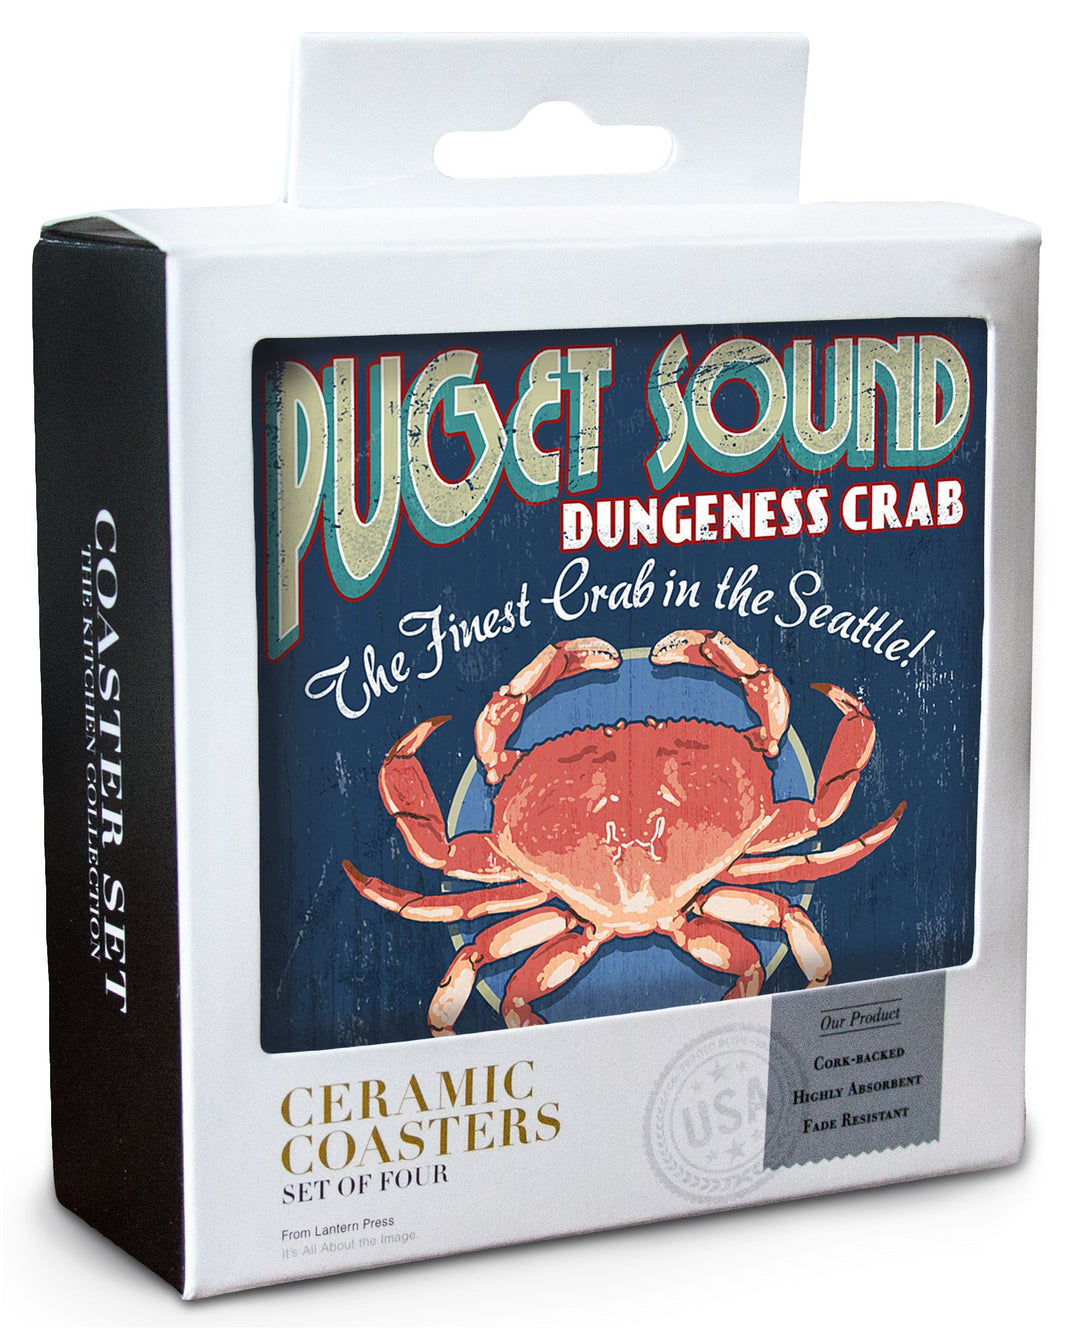 Seattle, Washington, Dungeness Crab Vintage Sign, Lantern Press Artwork, Coaster Set Coasters Lantern Press 